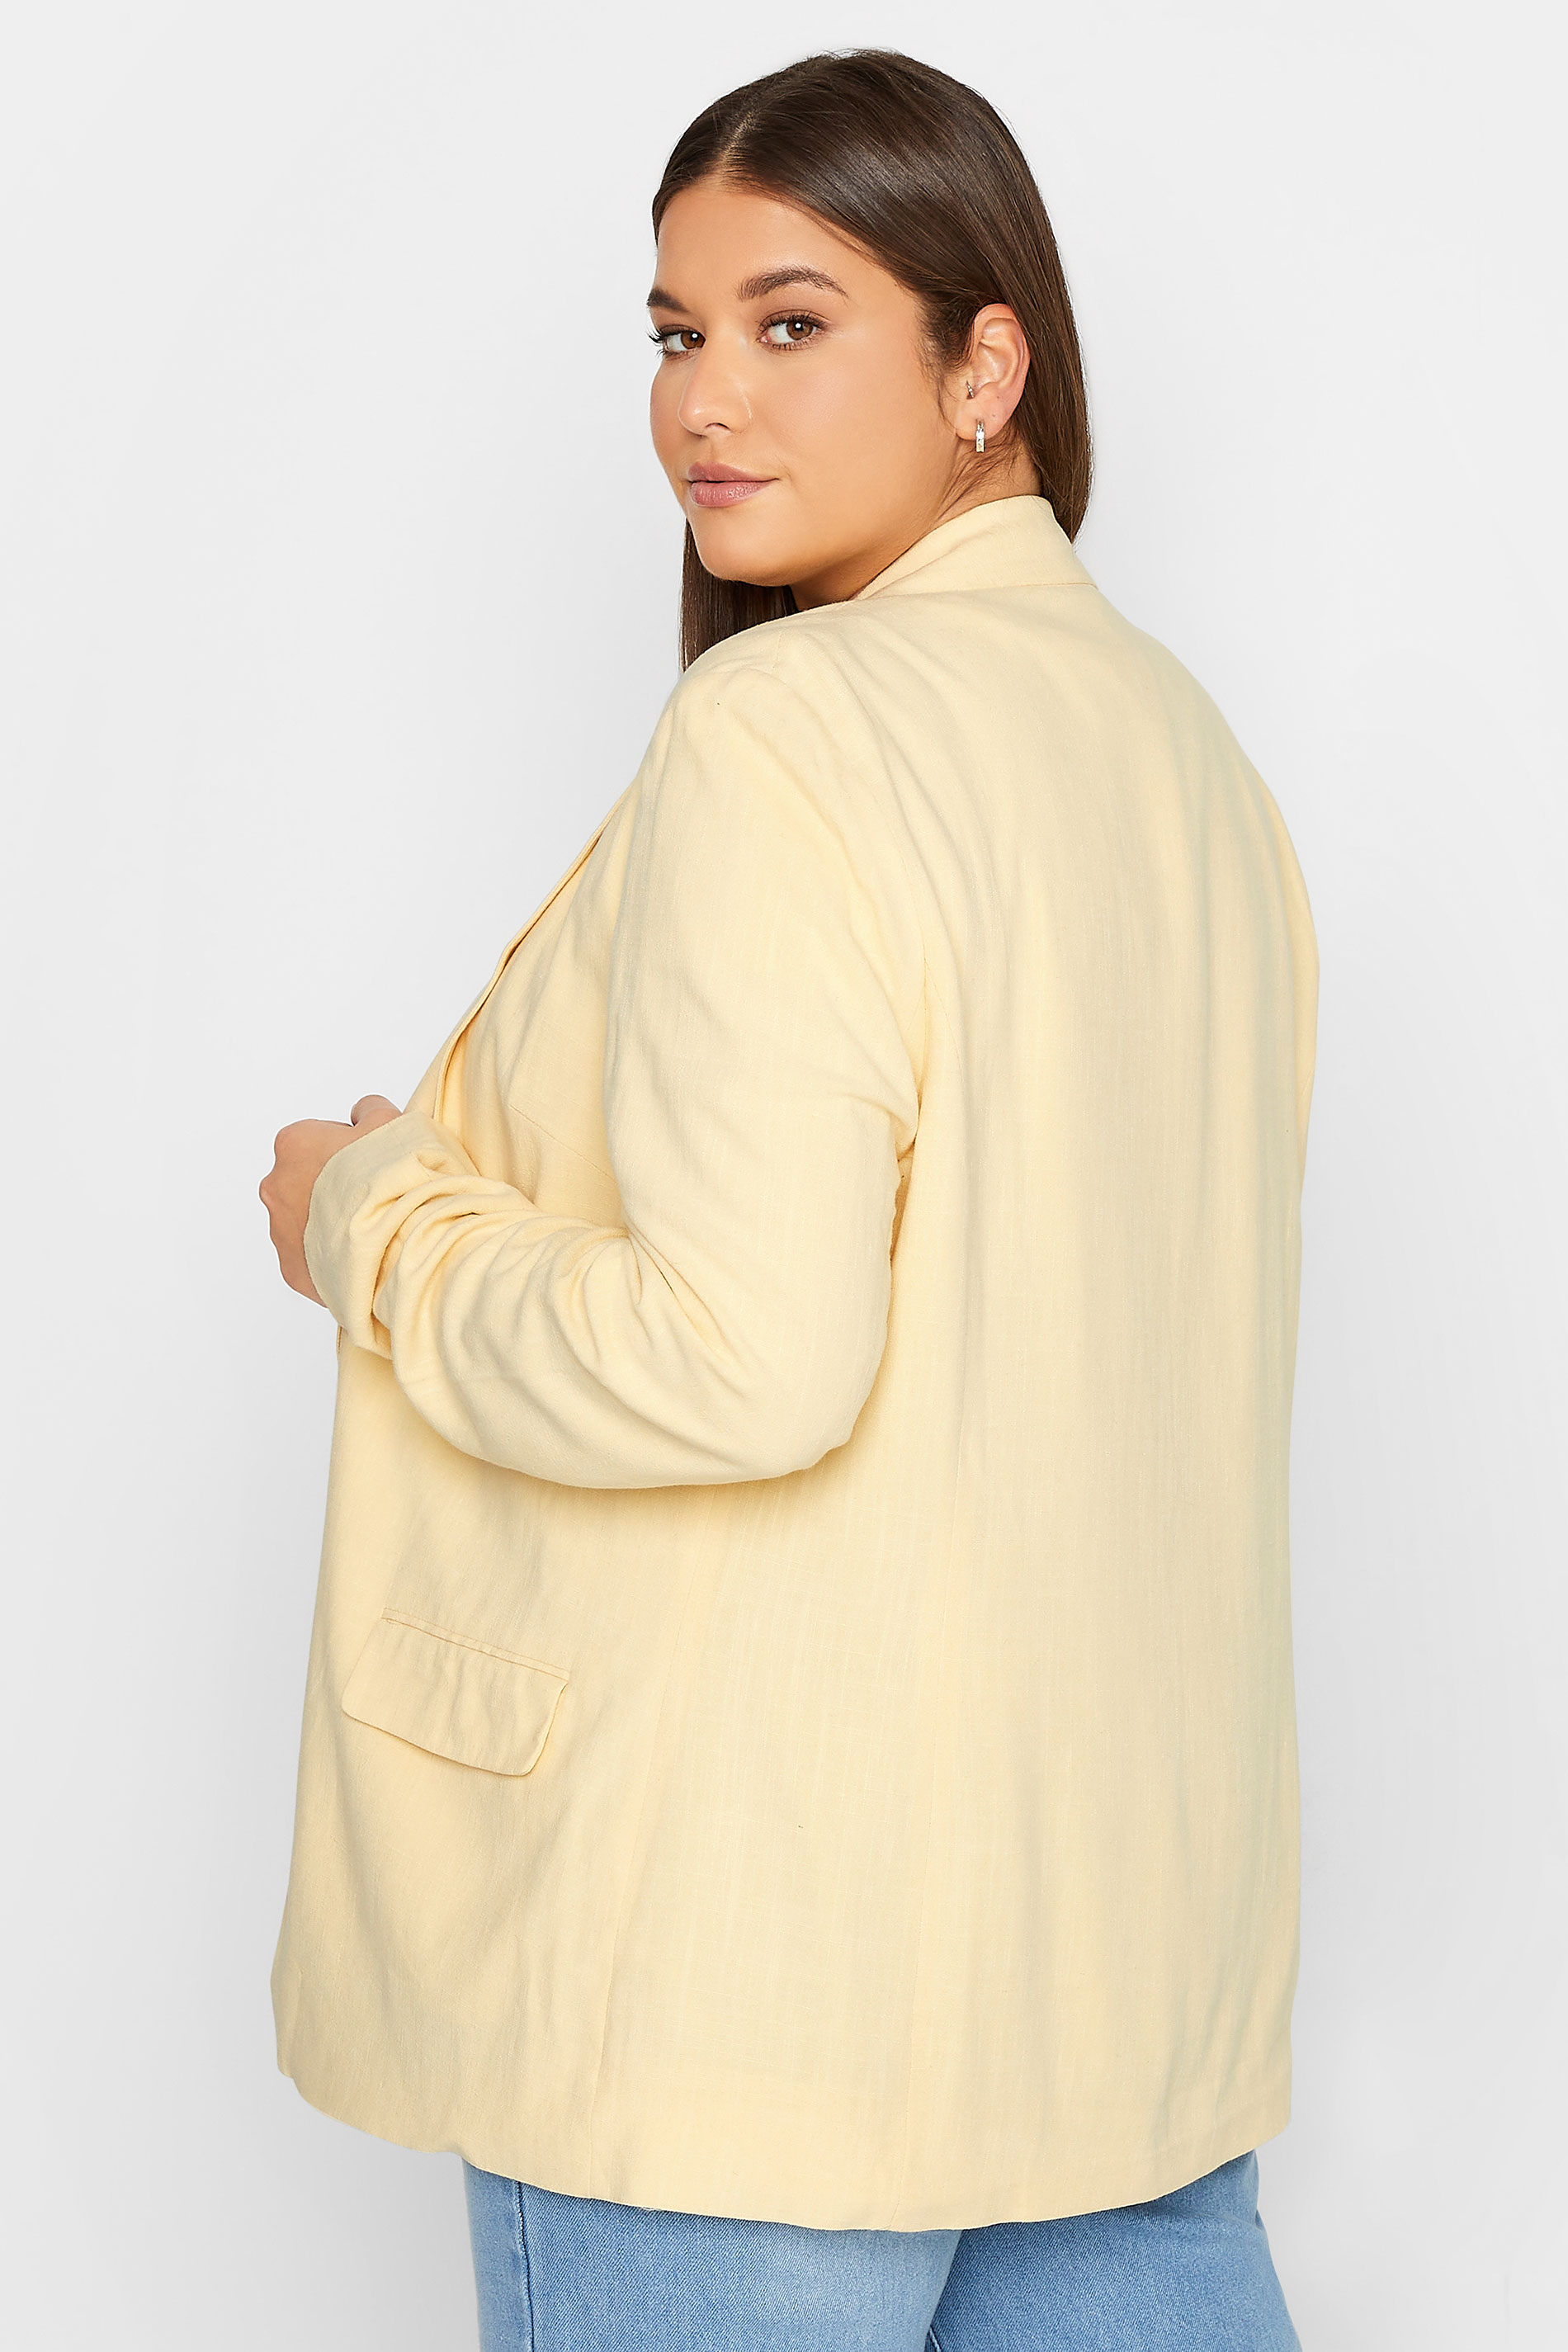 LTS Tall Women's Lemon Yellow Linen Blazer | Long Tall Sally  3